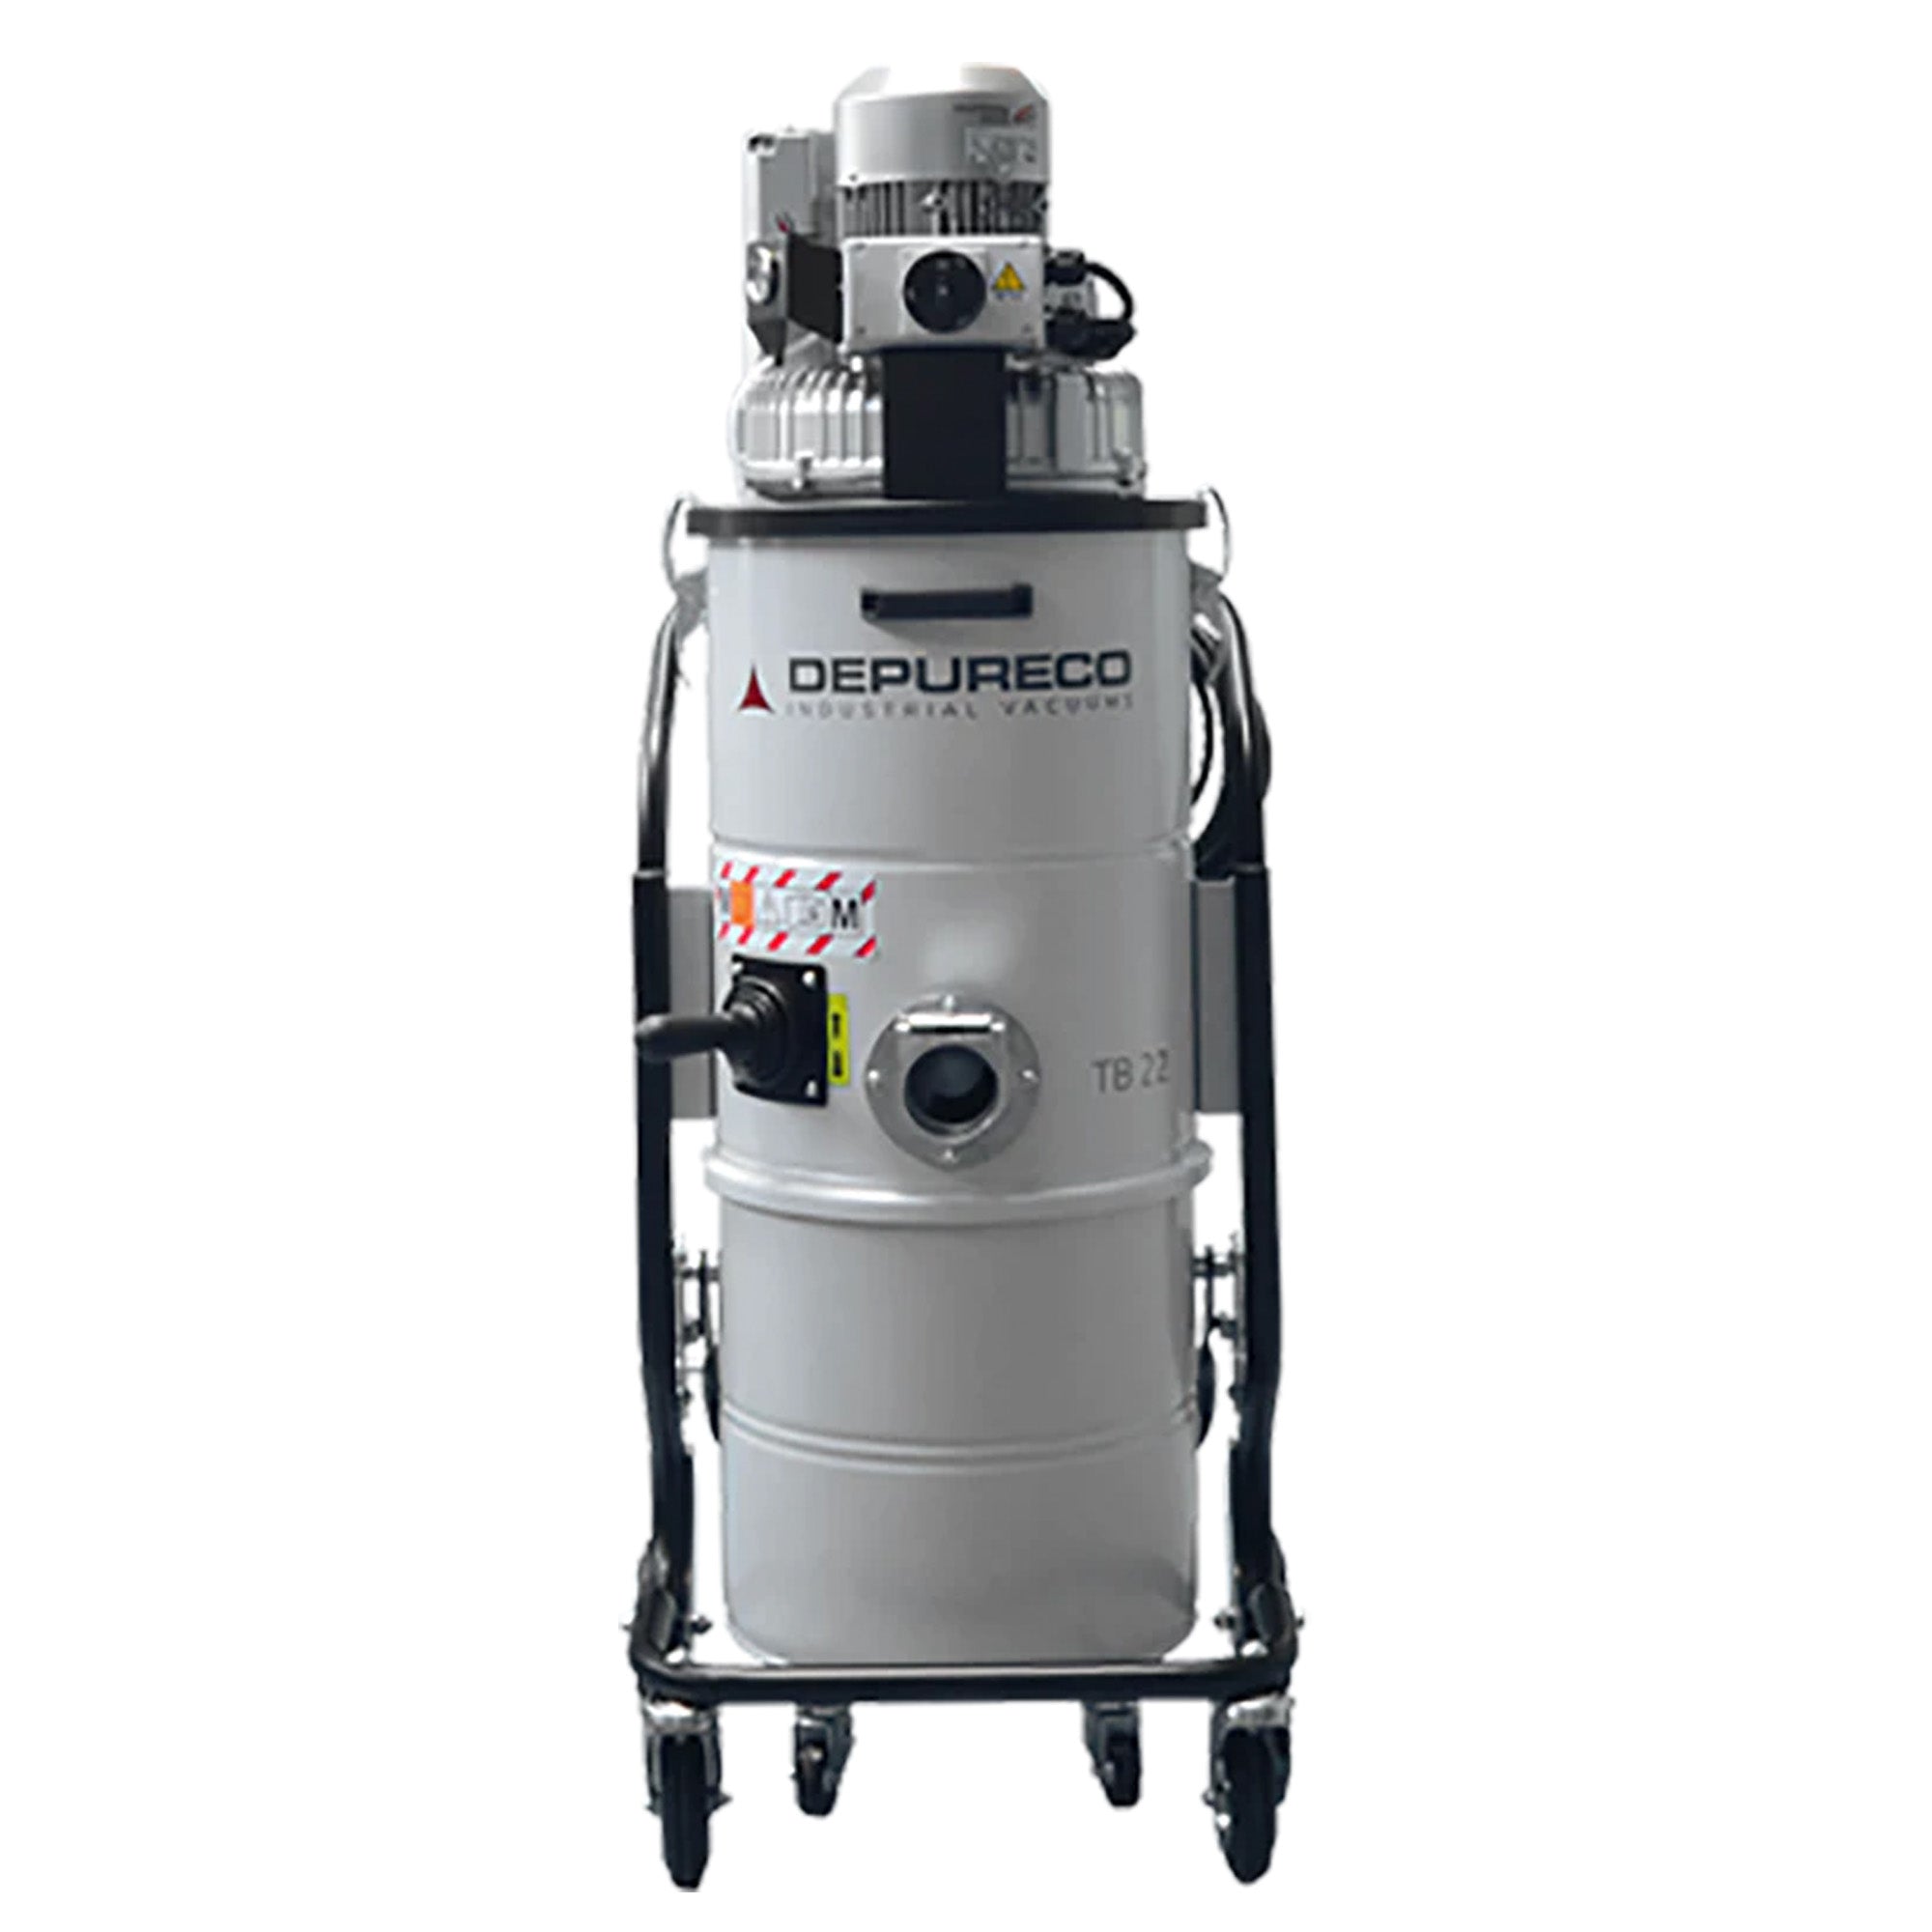 Depureco TB 18 M Three-Phase Industrial Vacuum Cleaner